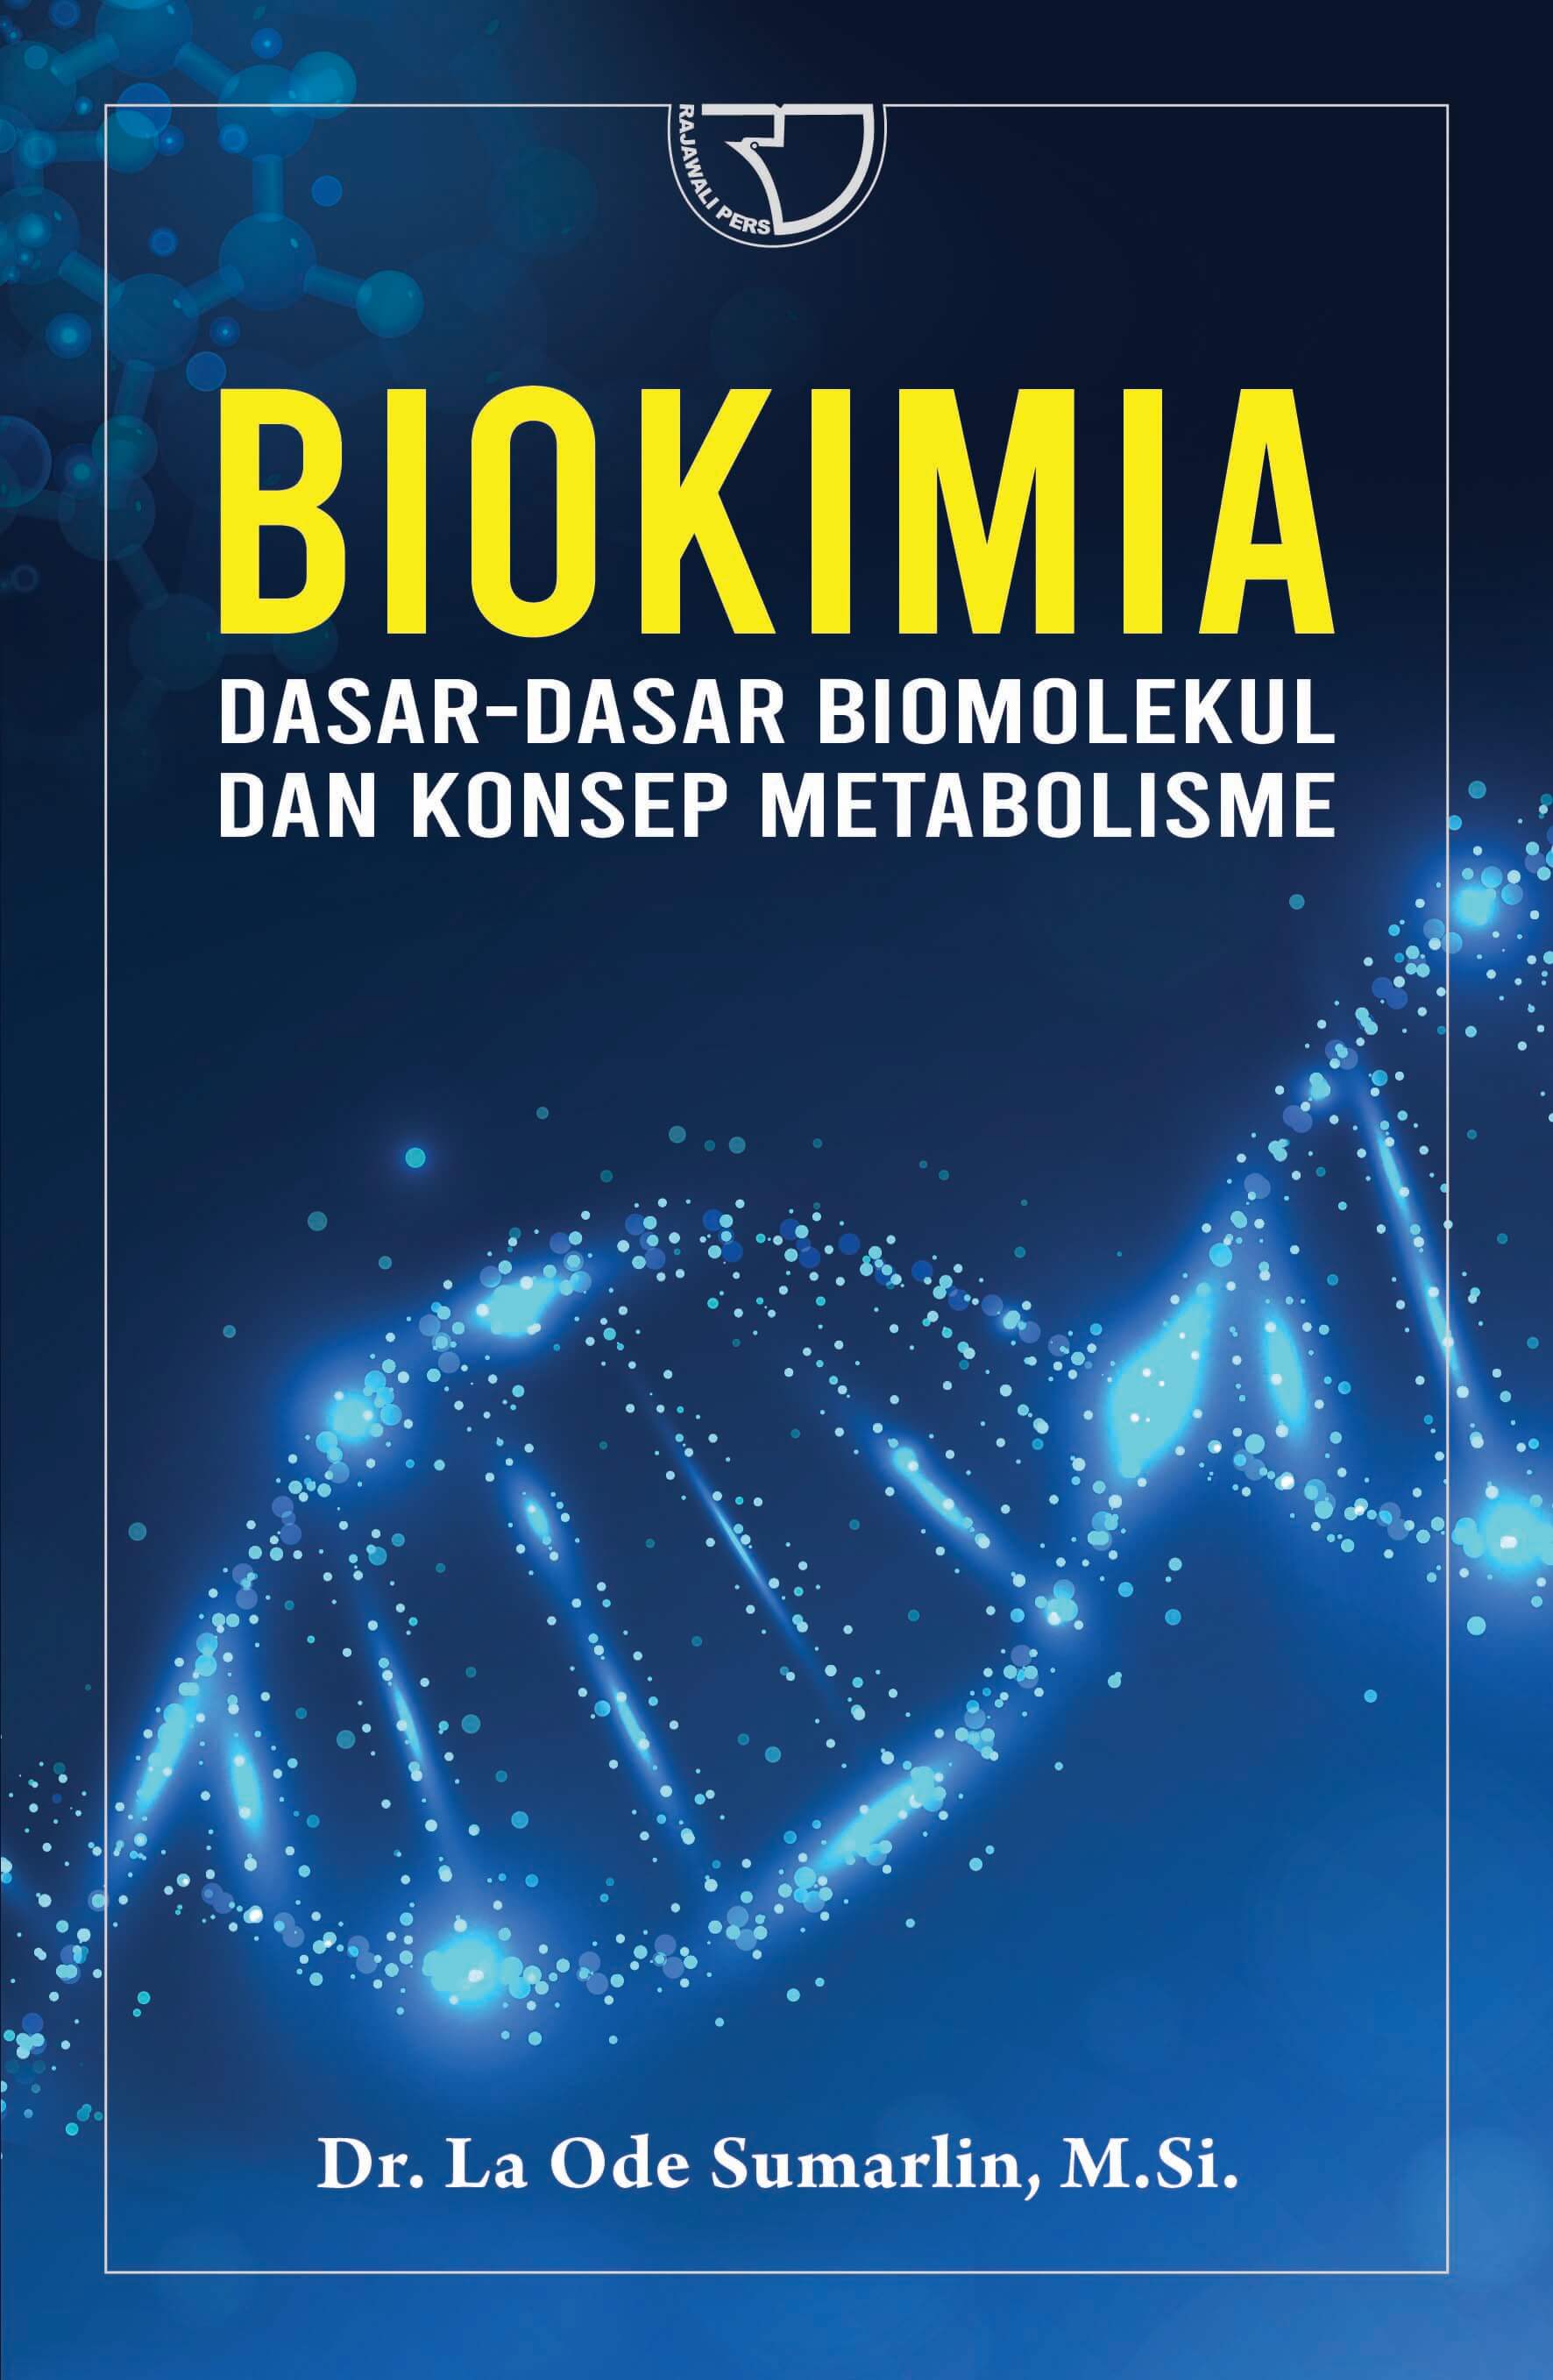 biokimia harper indonesia pdf